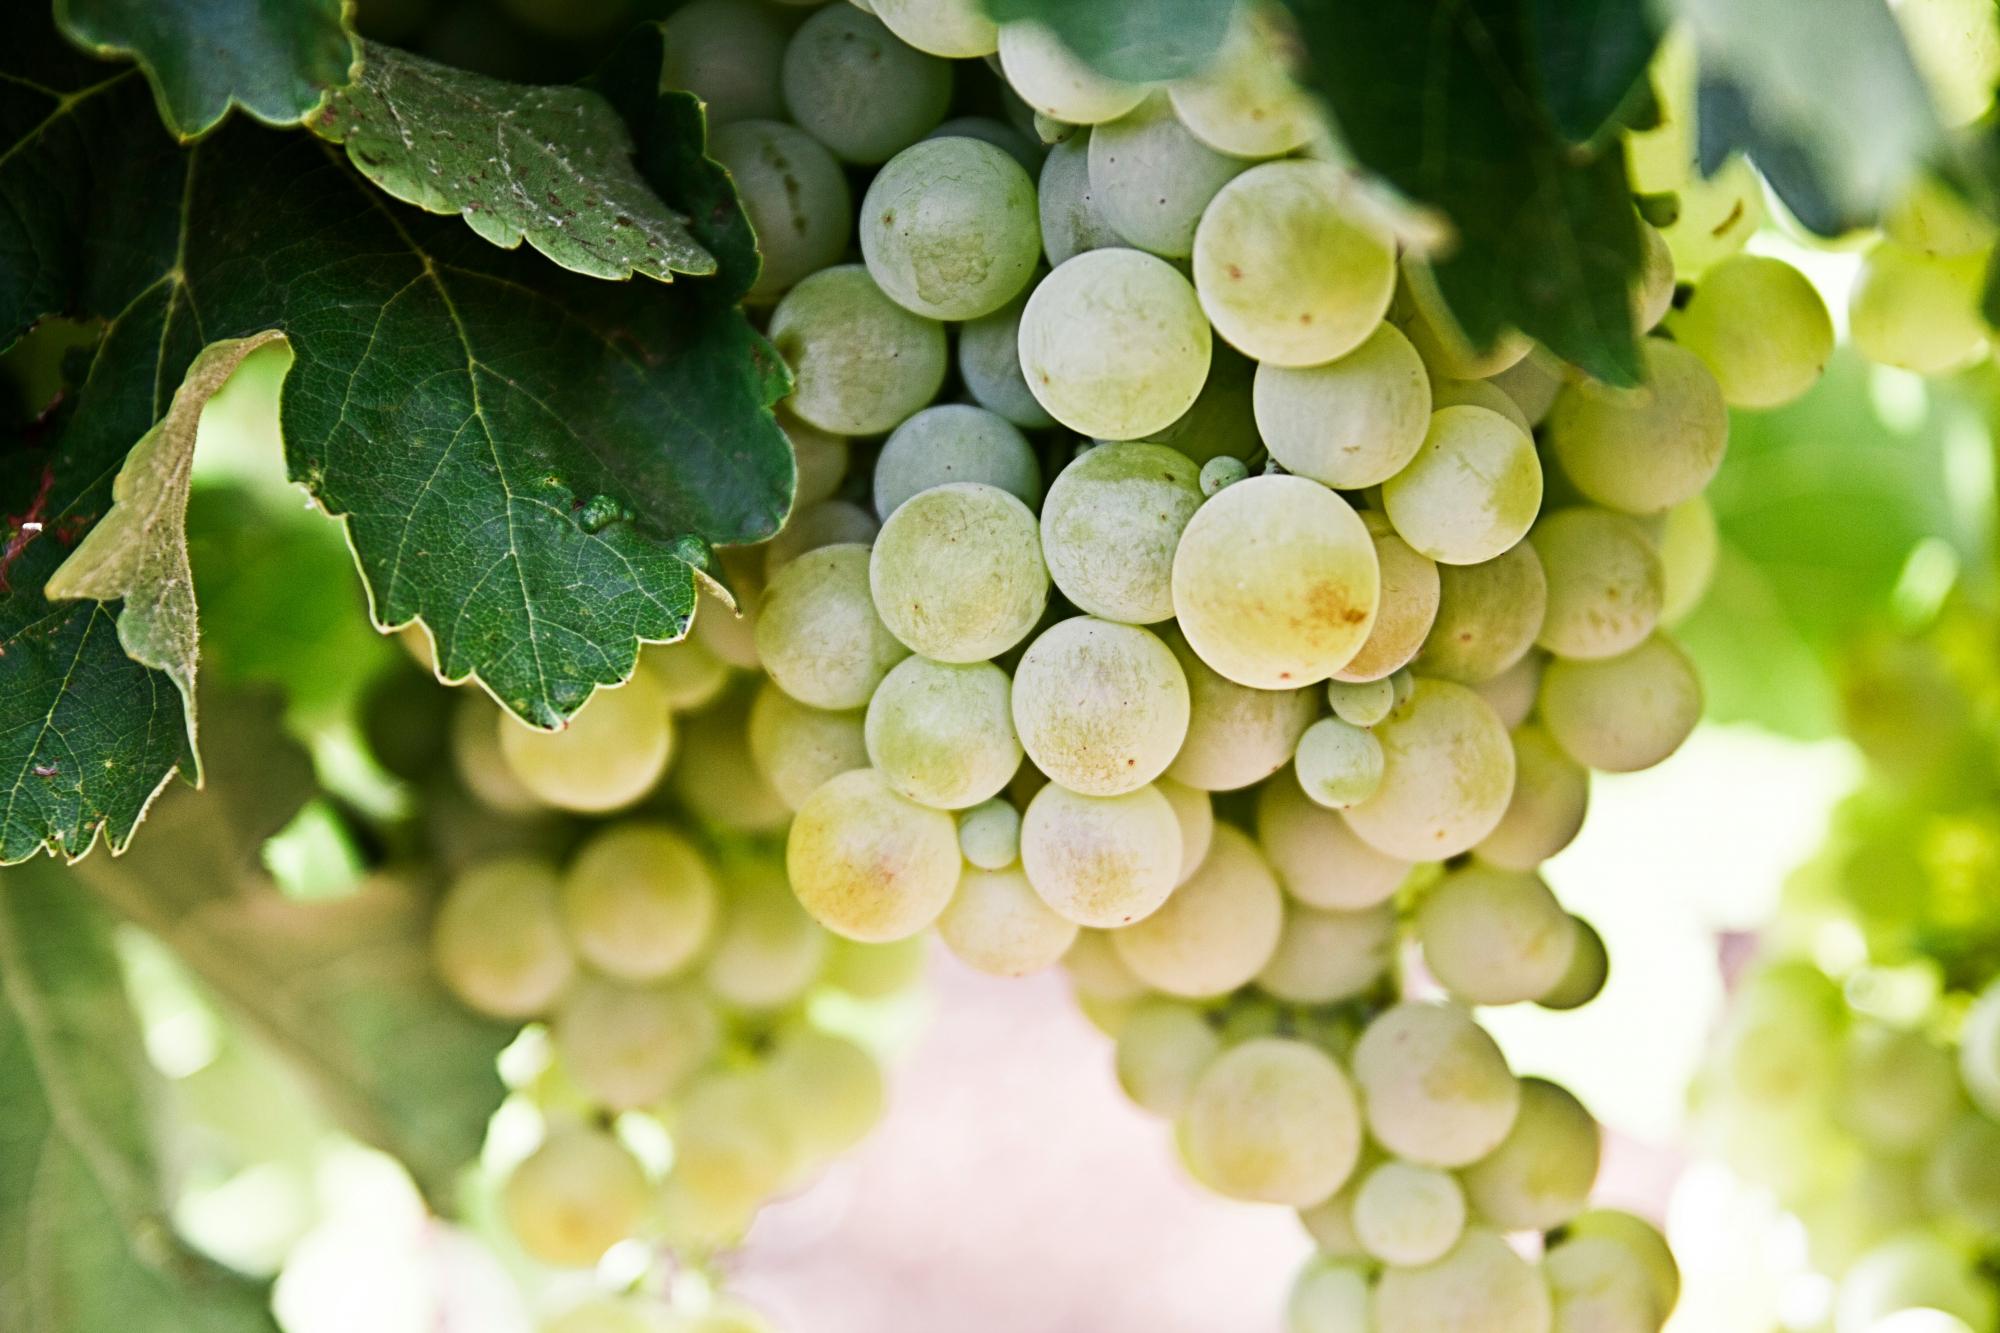 découvrez une sélection de vins blancs de qualité provenant des meilleurs vignobles, parfaits pour accompagner vos repas et célébrations.